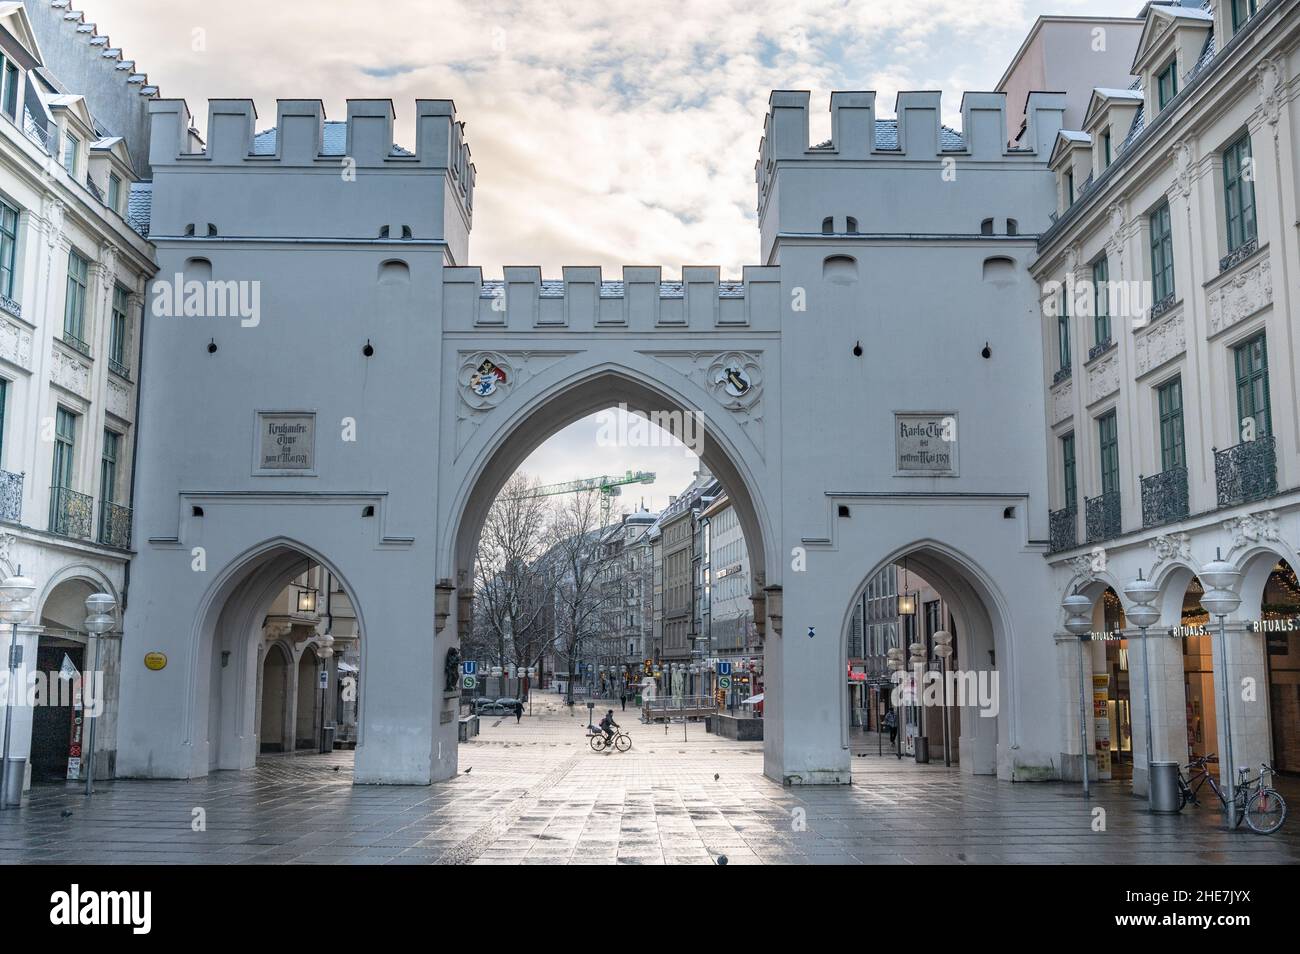 München- Das Karlstor,,(Stachus) früher Neuhauser Tor genannt, entstand neben dem Sendlinger Tor und dem Isartor im Zuge der zweiten Stadtbefestigung Stock Photo